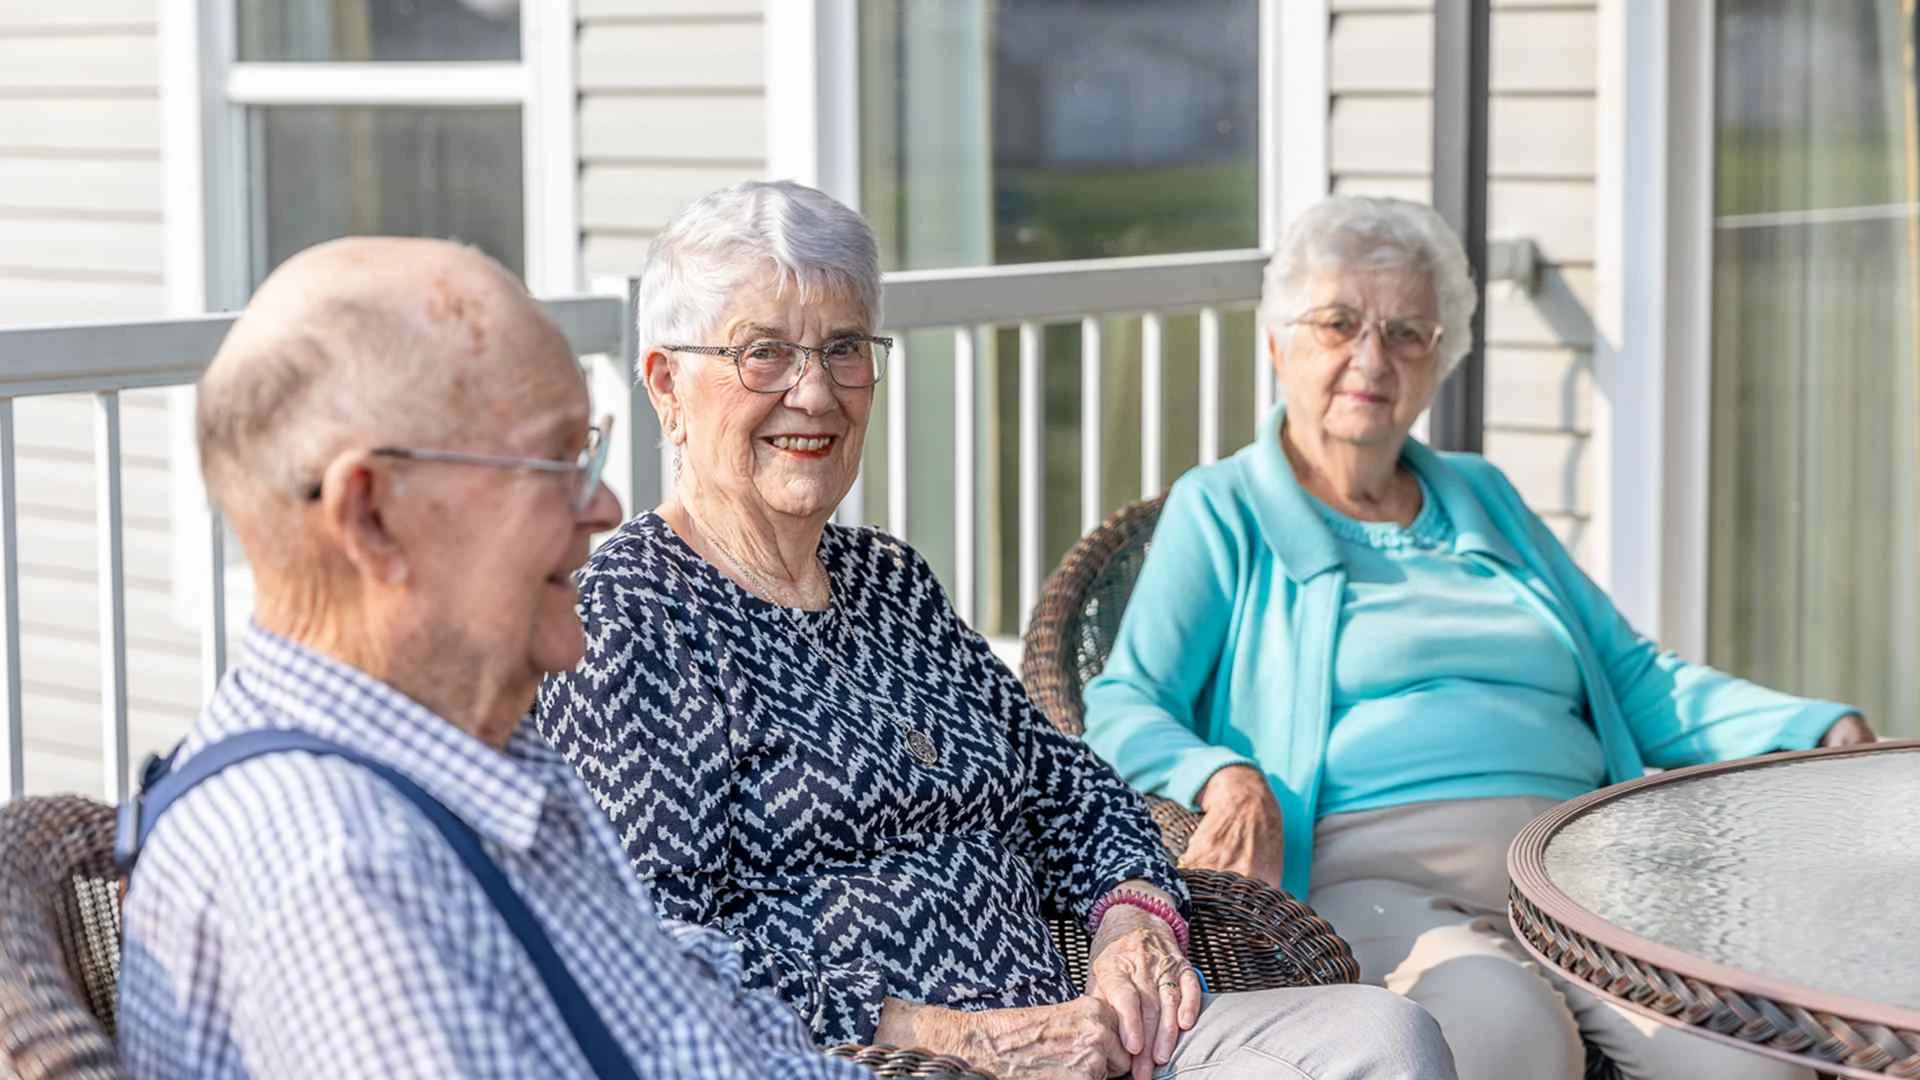 Three elderly people enjoy the sunshine while sitting outside.